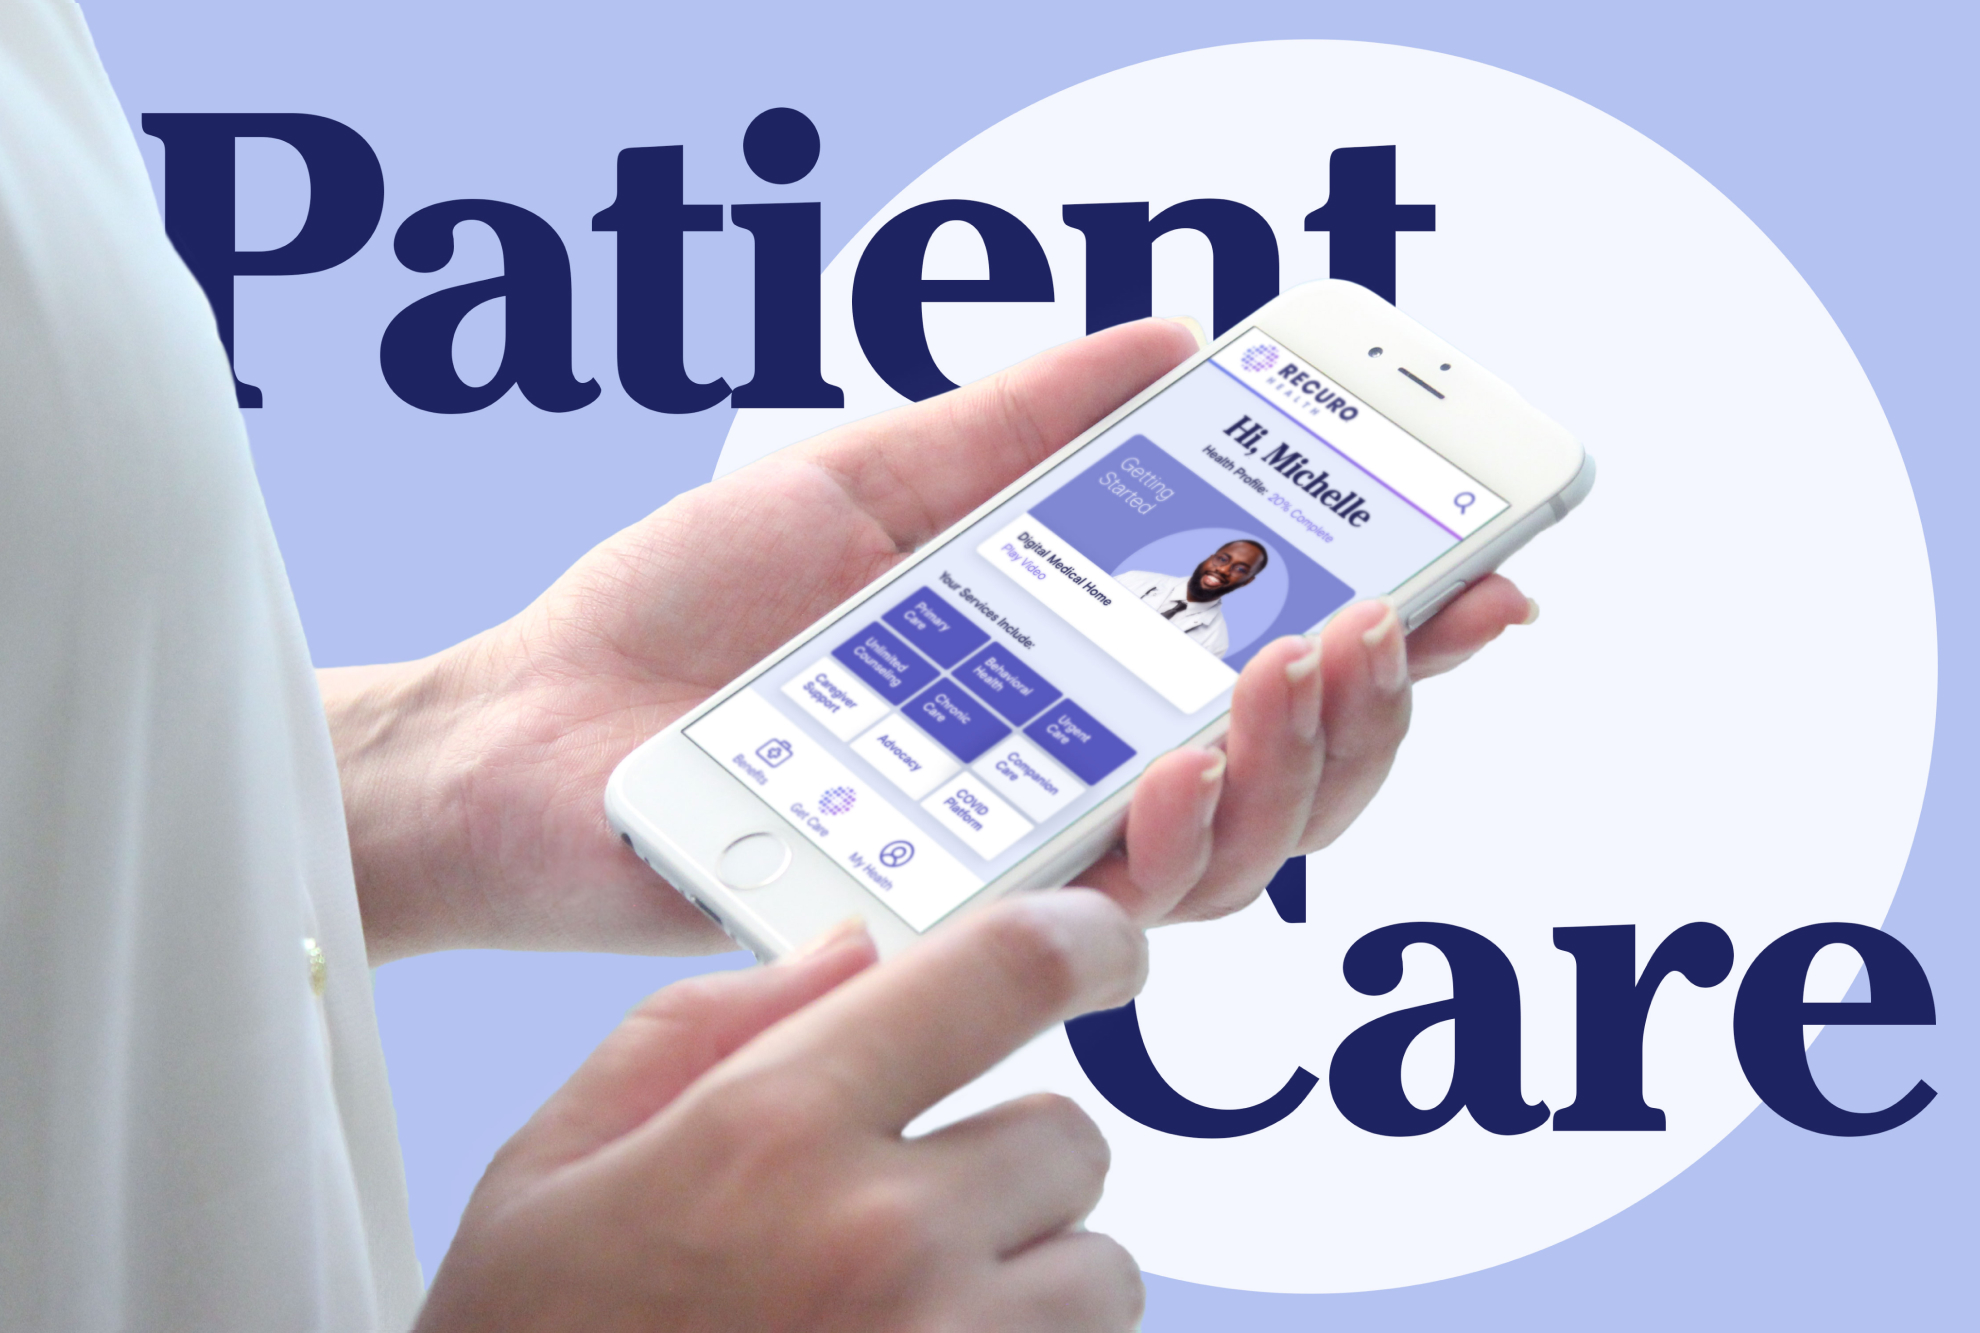 La sanidad digital crea una infraestructura más sólida para la atención al paciente